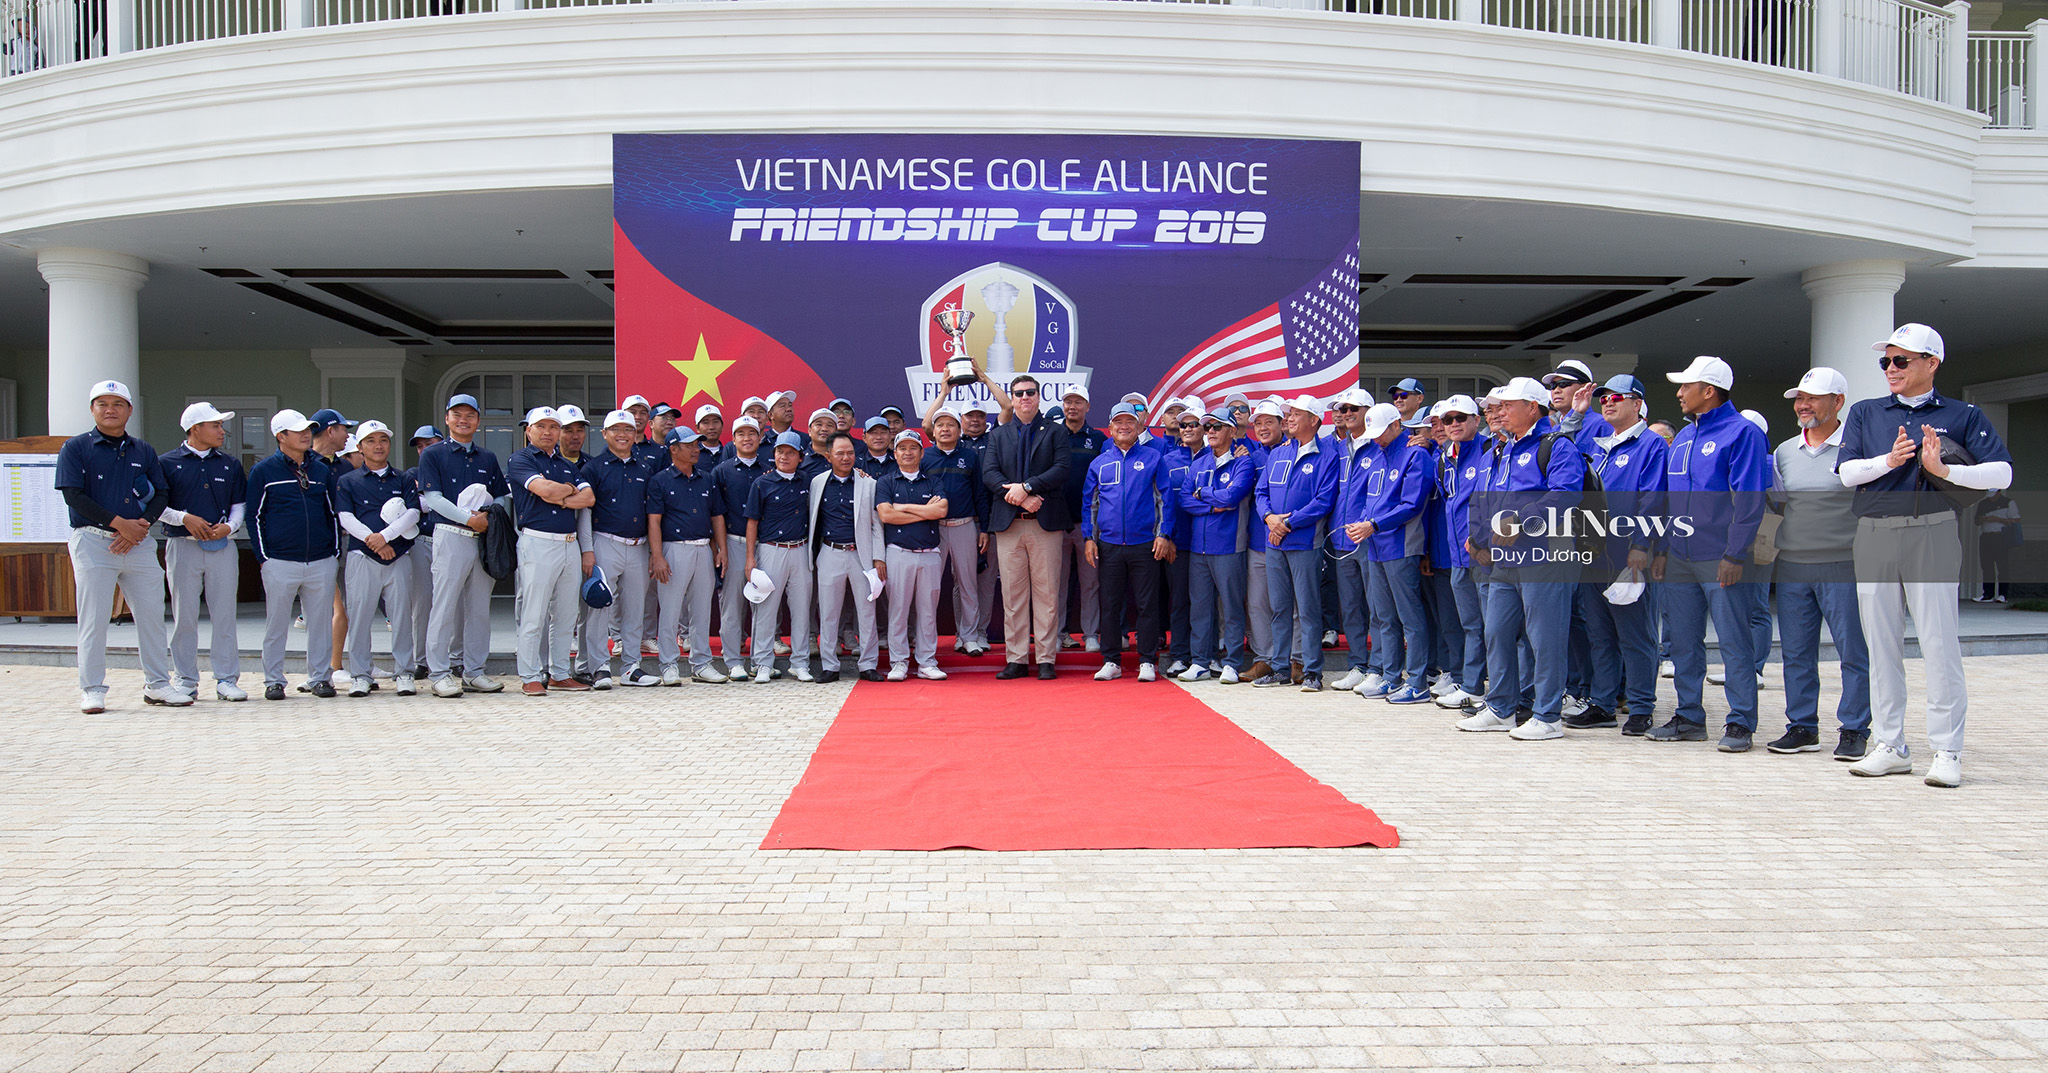 Lội ngược dòng, SGGA lần thứ 2 vô địch Vietnamese Golf Alliance Friendship Cup